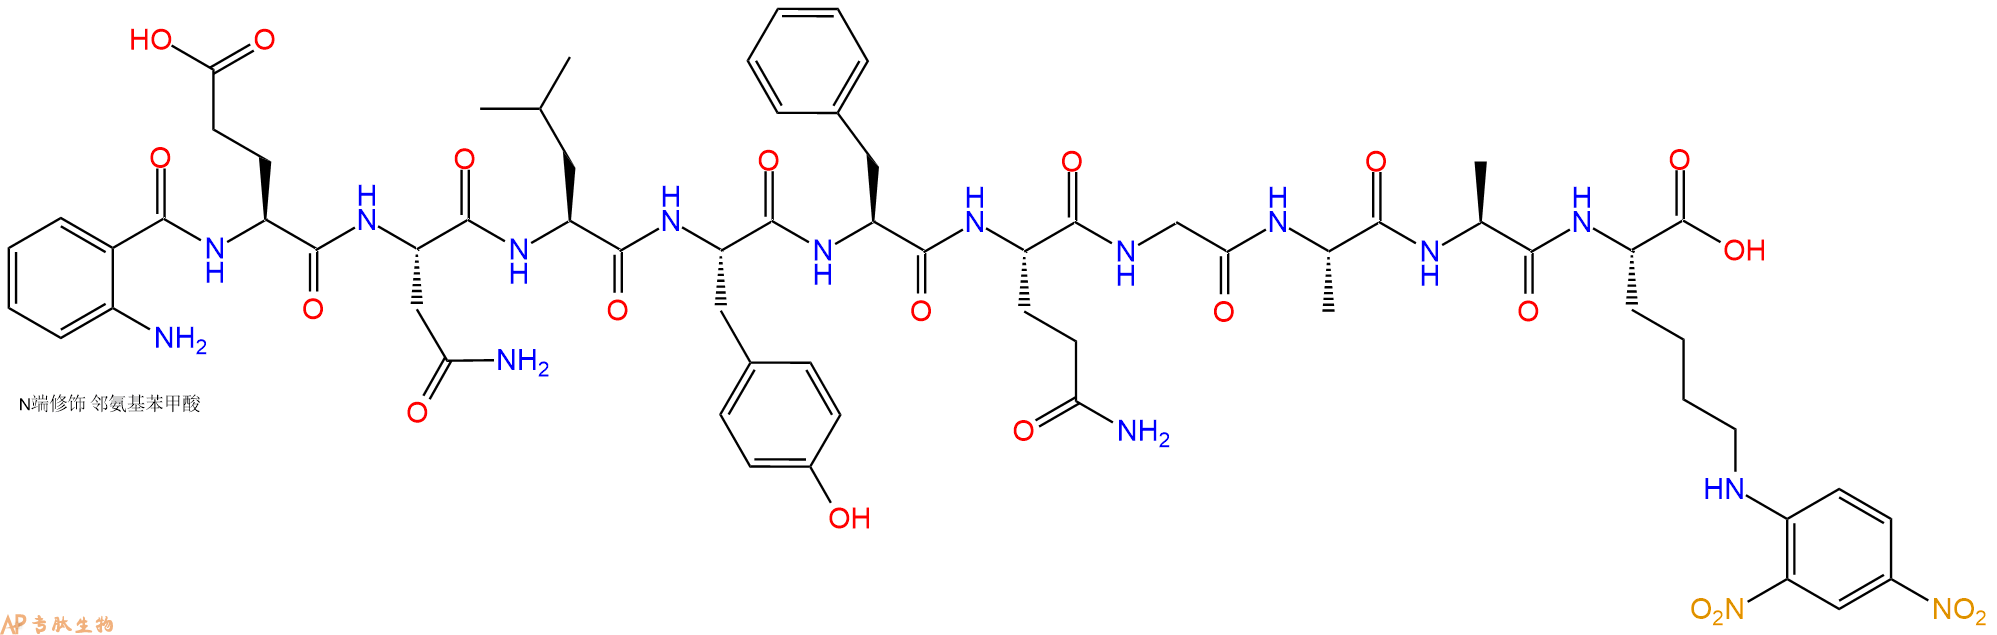 专肽生物产品十肽Abz-ENLYFQGAA-K(Dnp)